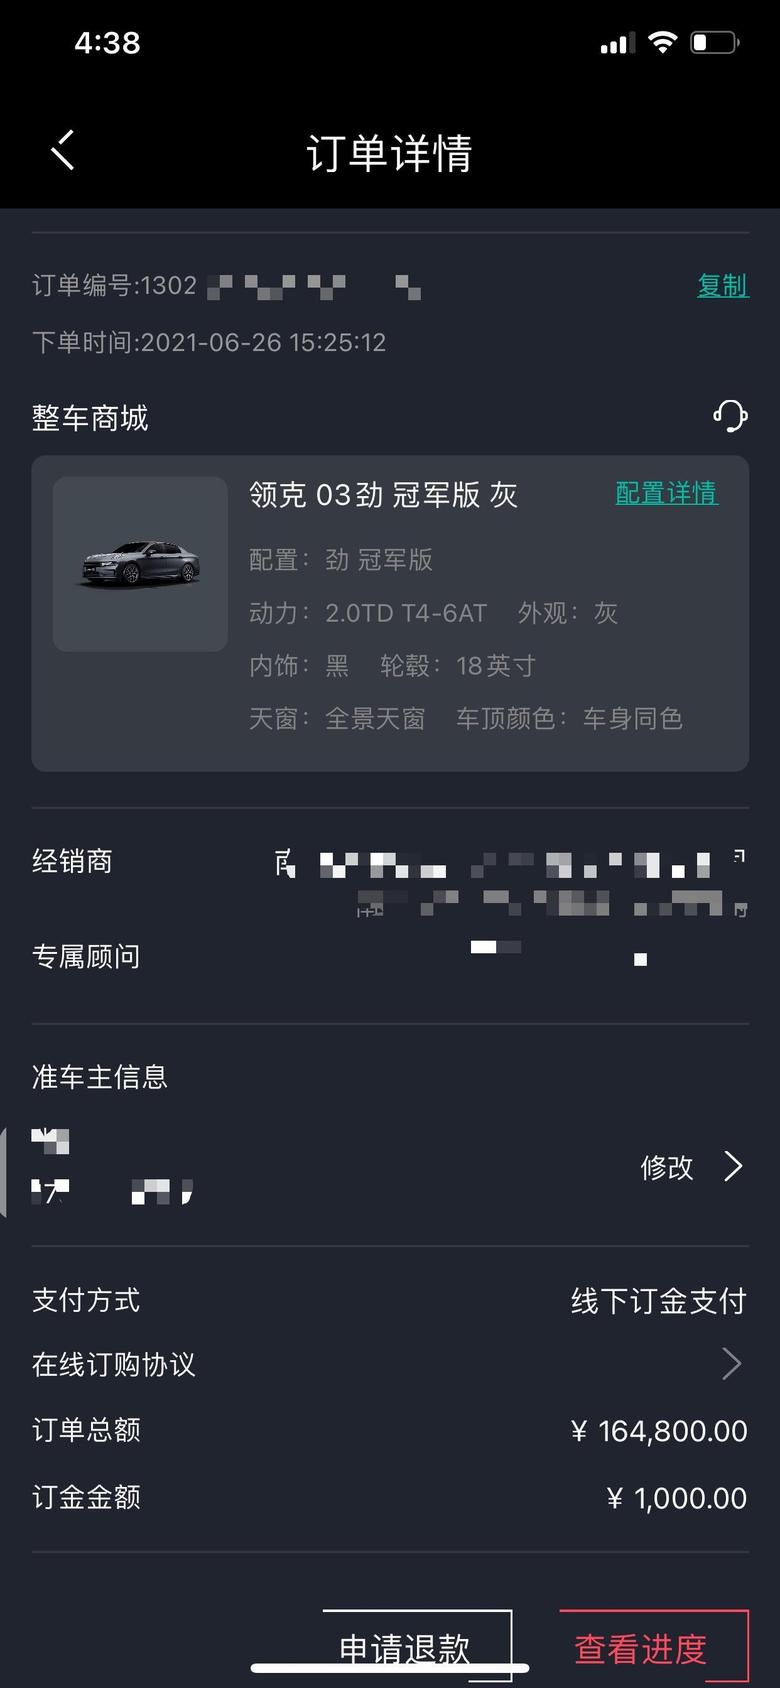 领克03 坐标南京，订单显示的只是官方指导裸车价不包括任何费用，裸车具体优惠多少以线下实付为准。仅供参考，不懂就问